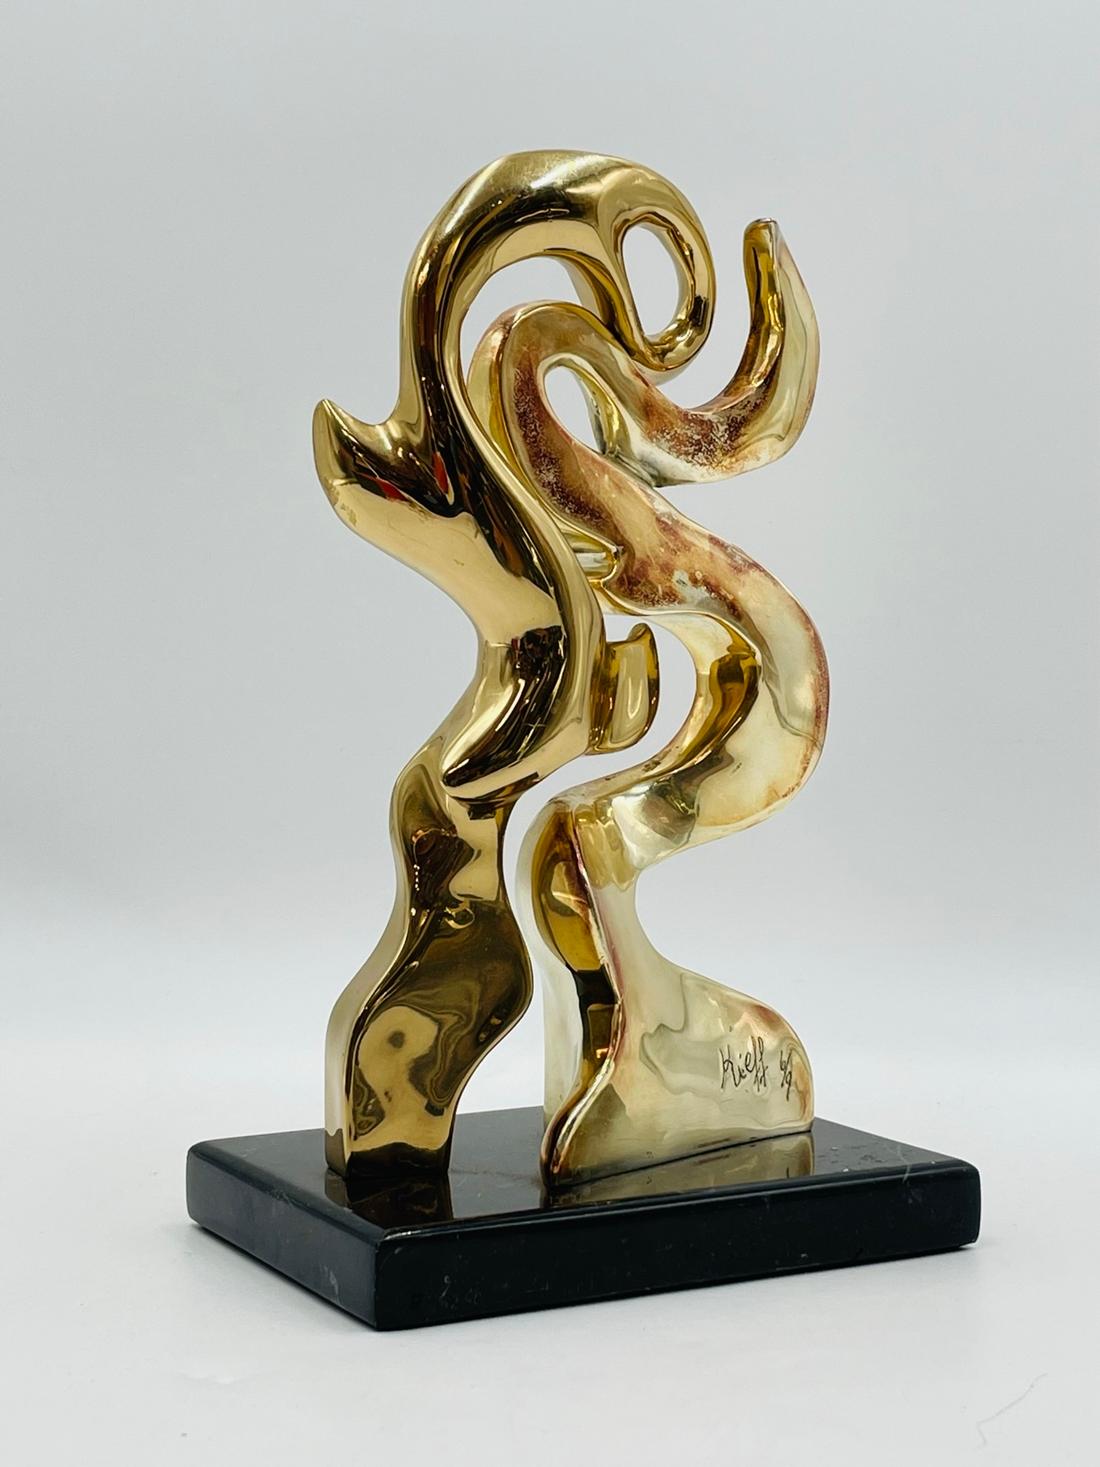 Die Bronzeskulptur von Kieff Grediaga ist ein atemberaubendes Kunstwerk, das Ihr Zuhause oder Ihr Büro aufwerten wird. Diese exquisite Skulptur zeigt zwei miteinander verbundene Linien, die sich wunderschön verflechten und ein Gefühl von Bewegung